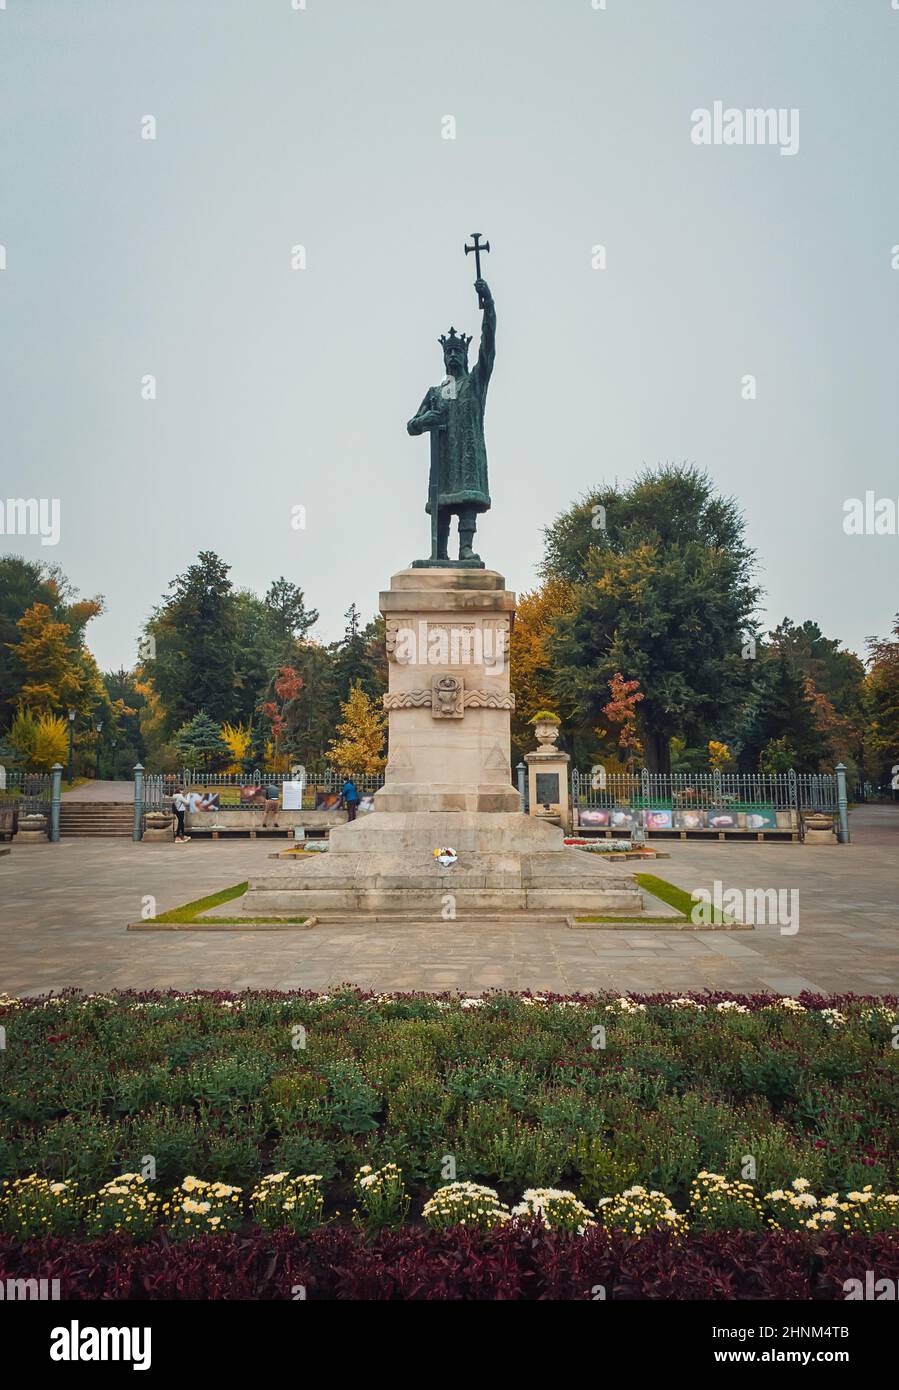 Stephen III le Grand monument (statue de Stefan cel Mare) devant le parc dans un jour pluvieux d'automne, ville de Chisinau, Moldavie. Banque D'Images